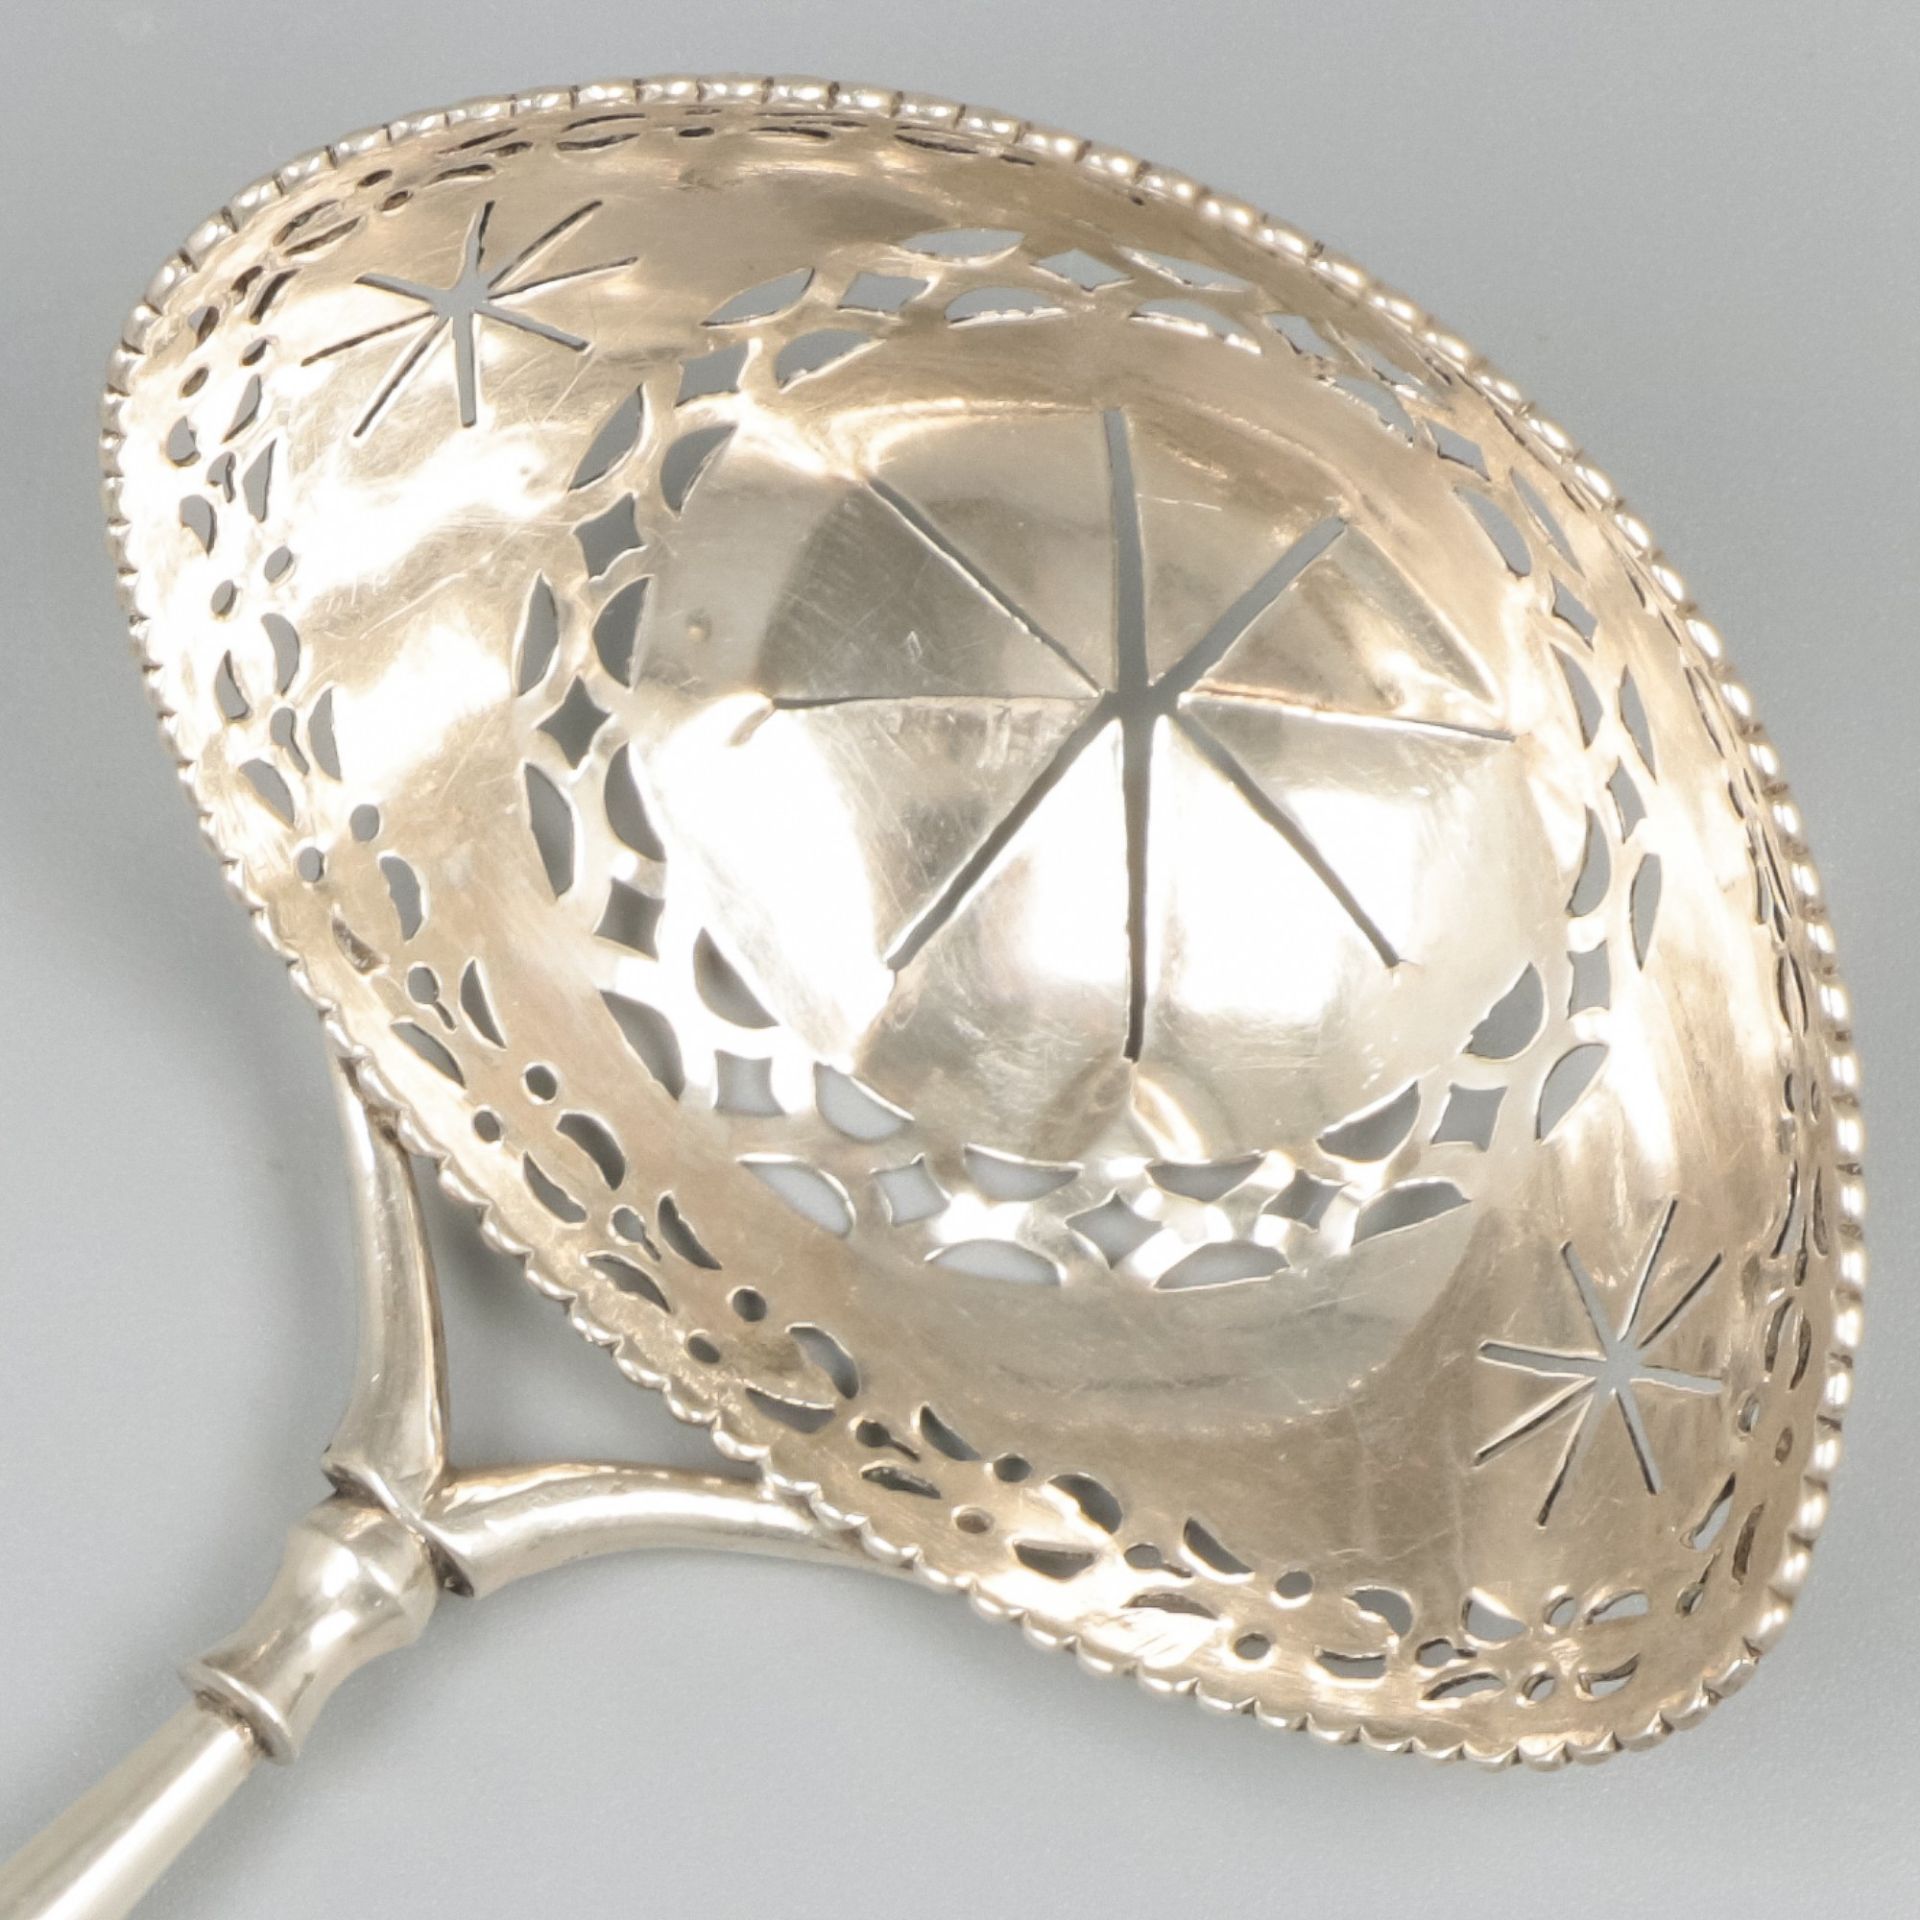 Silver sifter spoon, Adrianus Koekebakker, Amsterdam 1791-1811. - Image 4 of 8